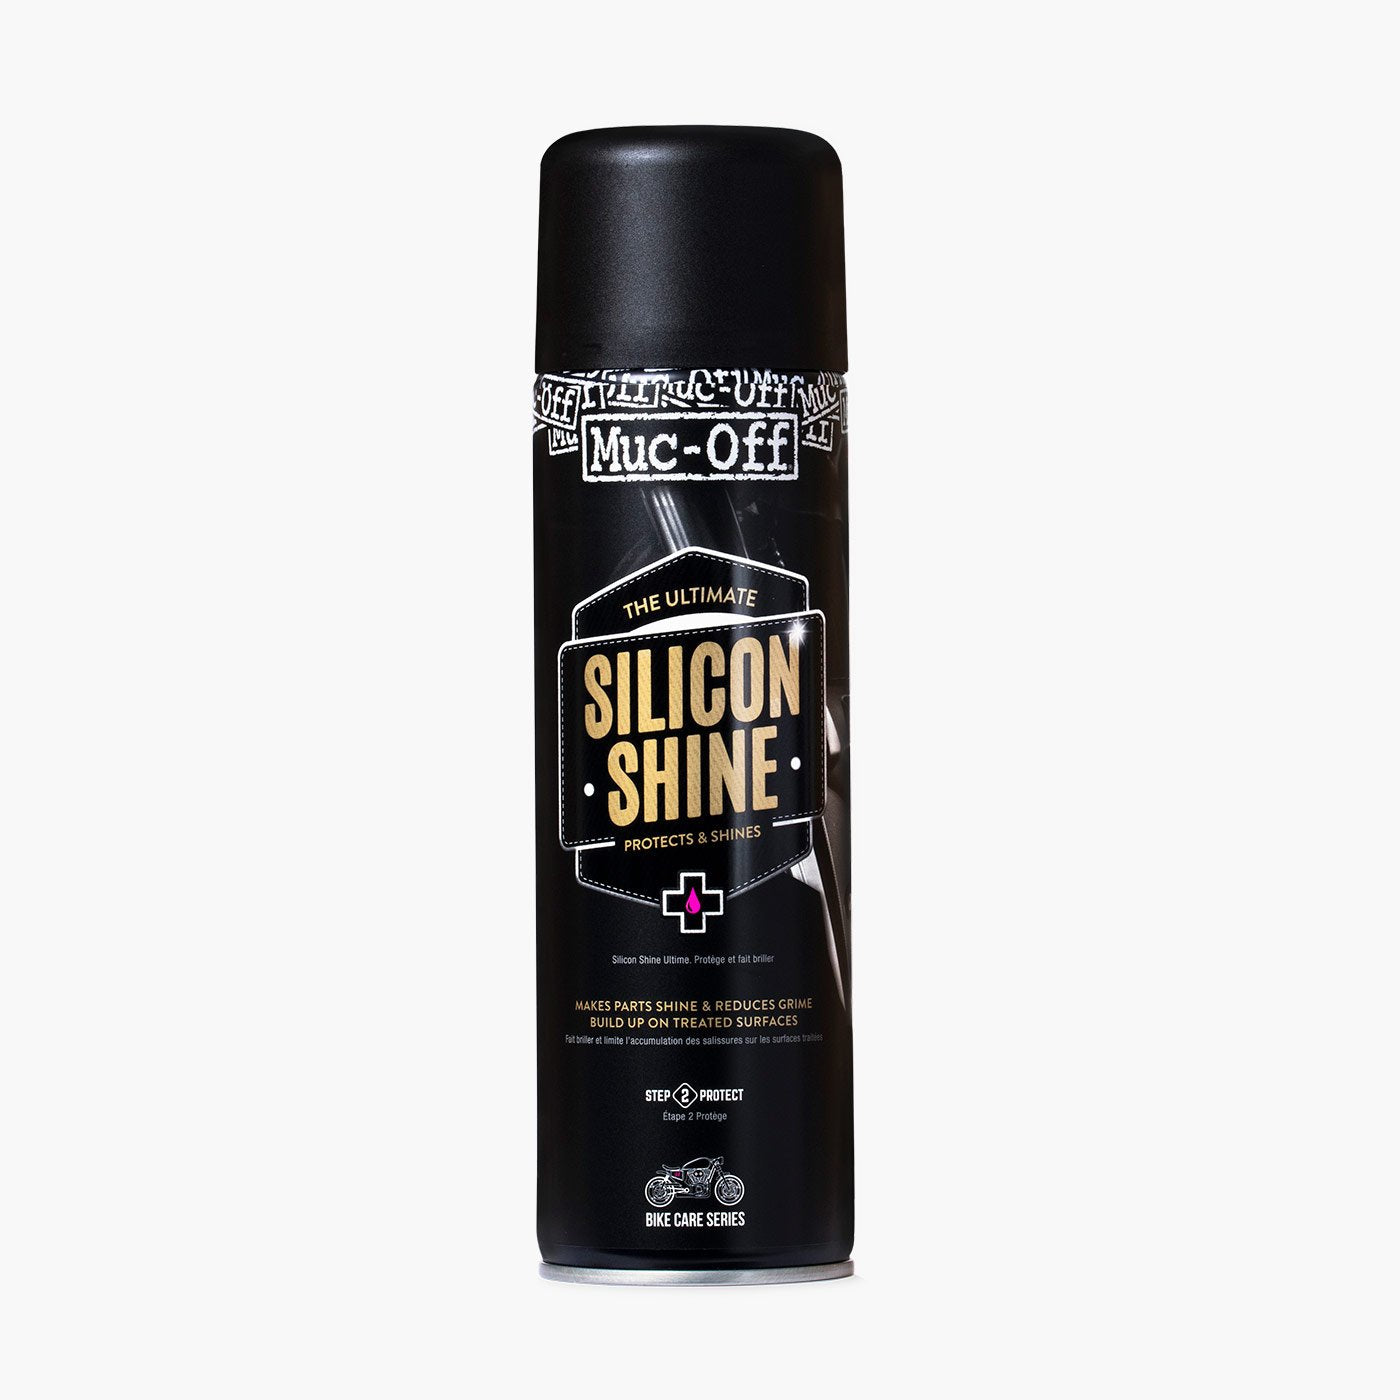 Muc-Off Silicona Spray - Silicone Shine